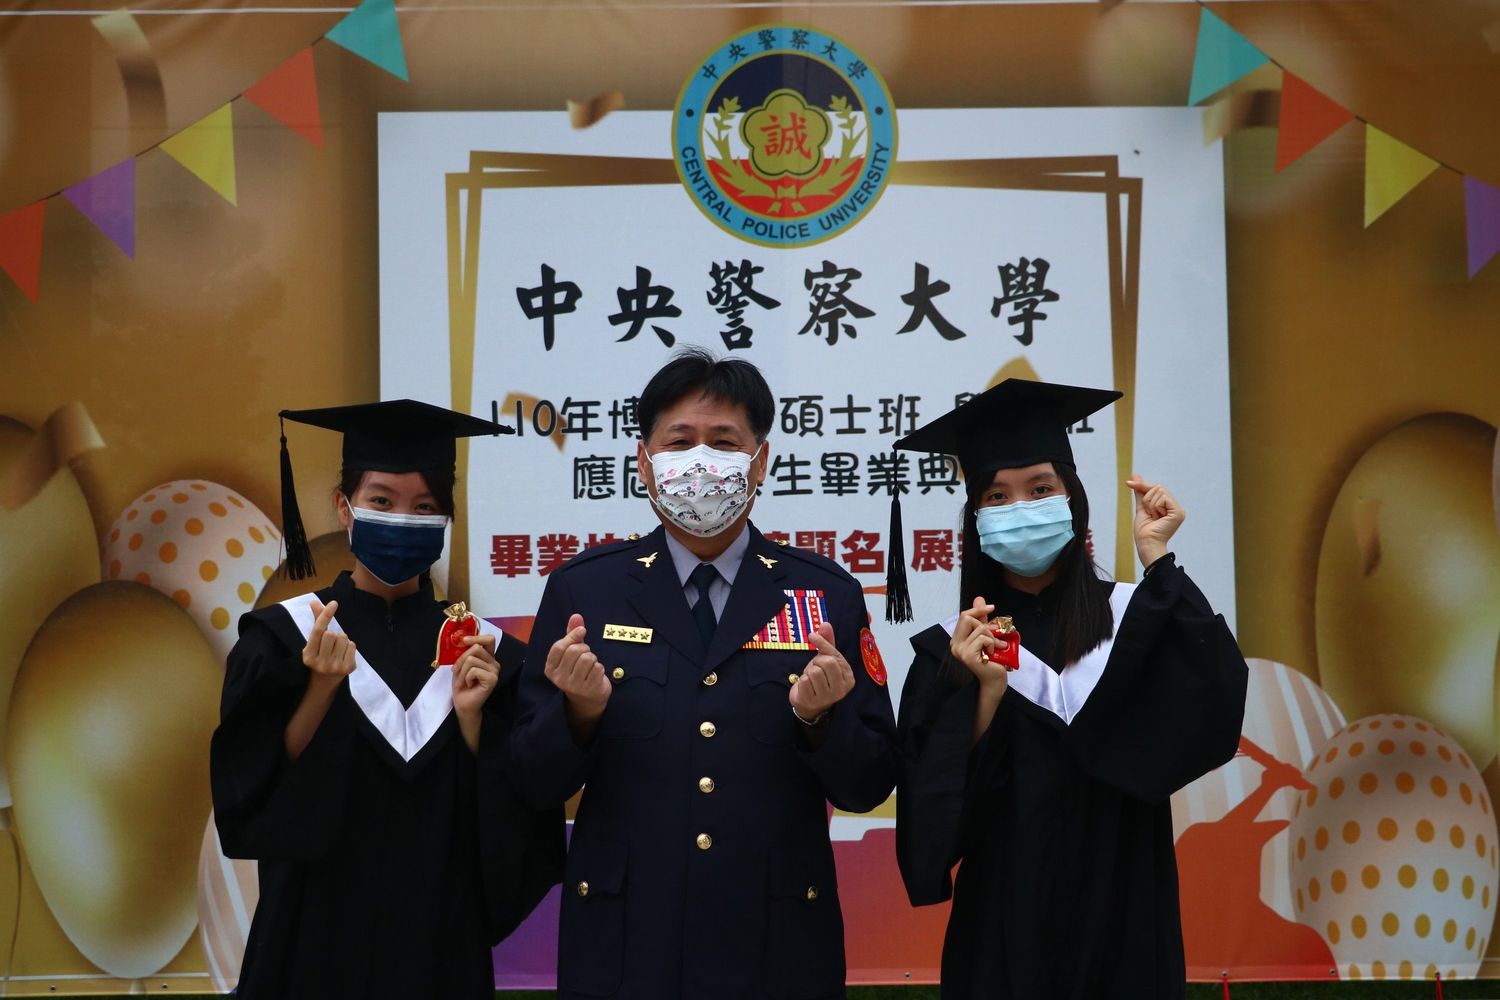 警大線上畢業典禮 徐國勇期勉470位畢業生為維護社會安全努力